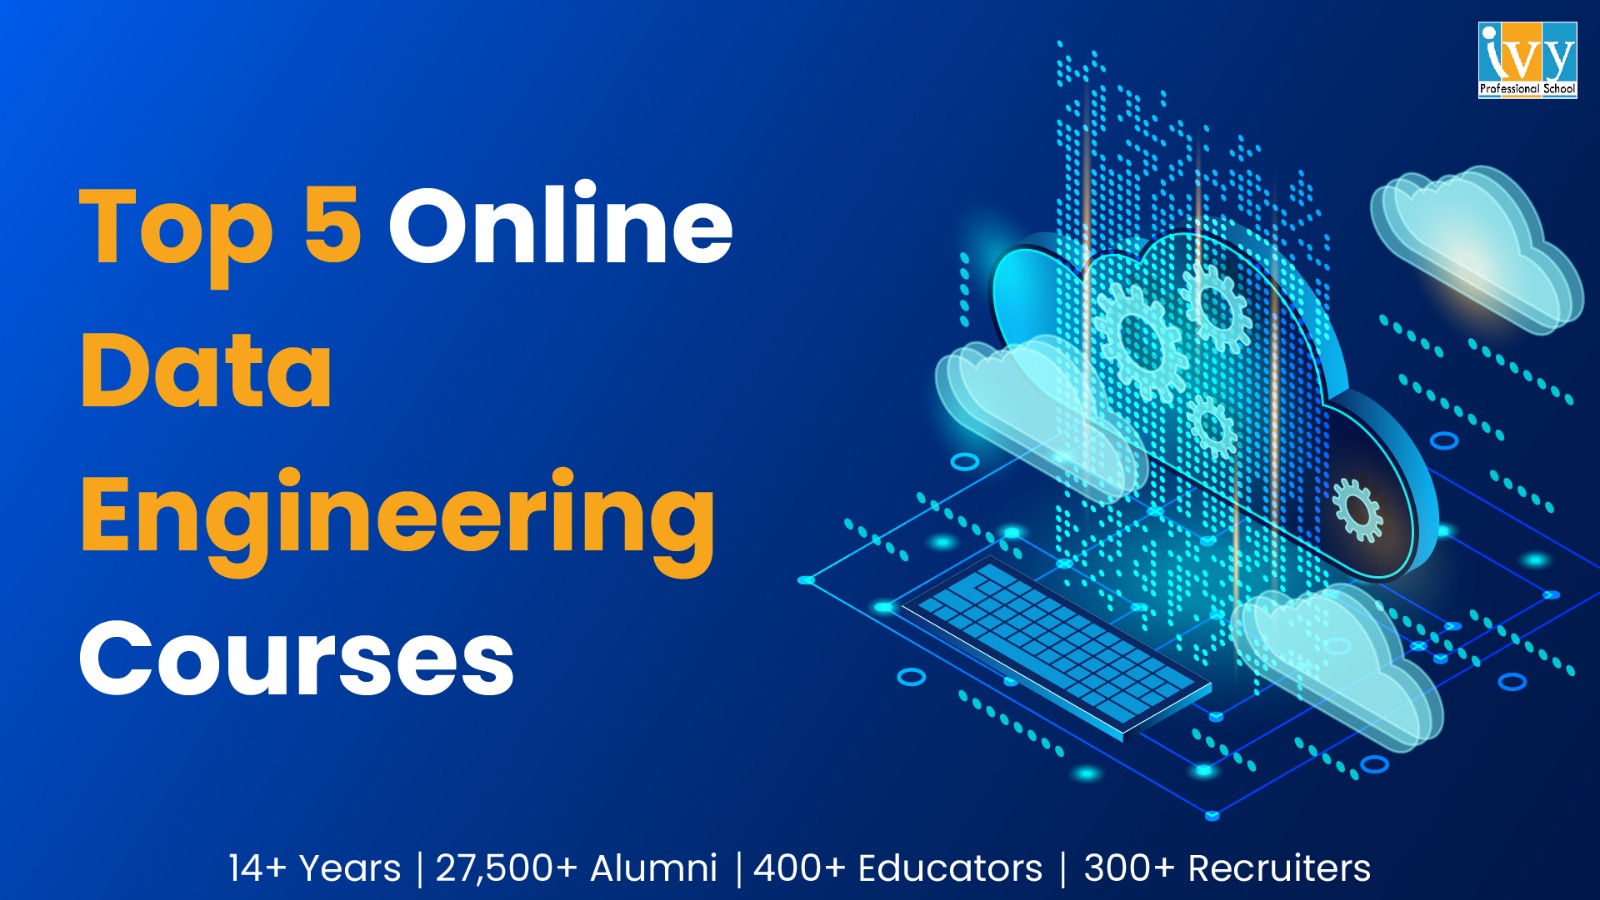 Top 5 Online Data Engineering Courses